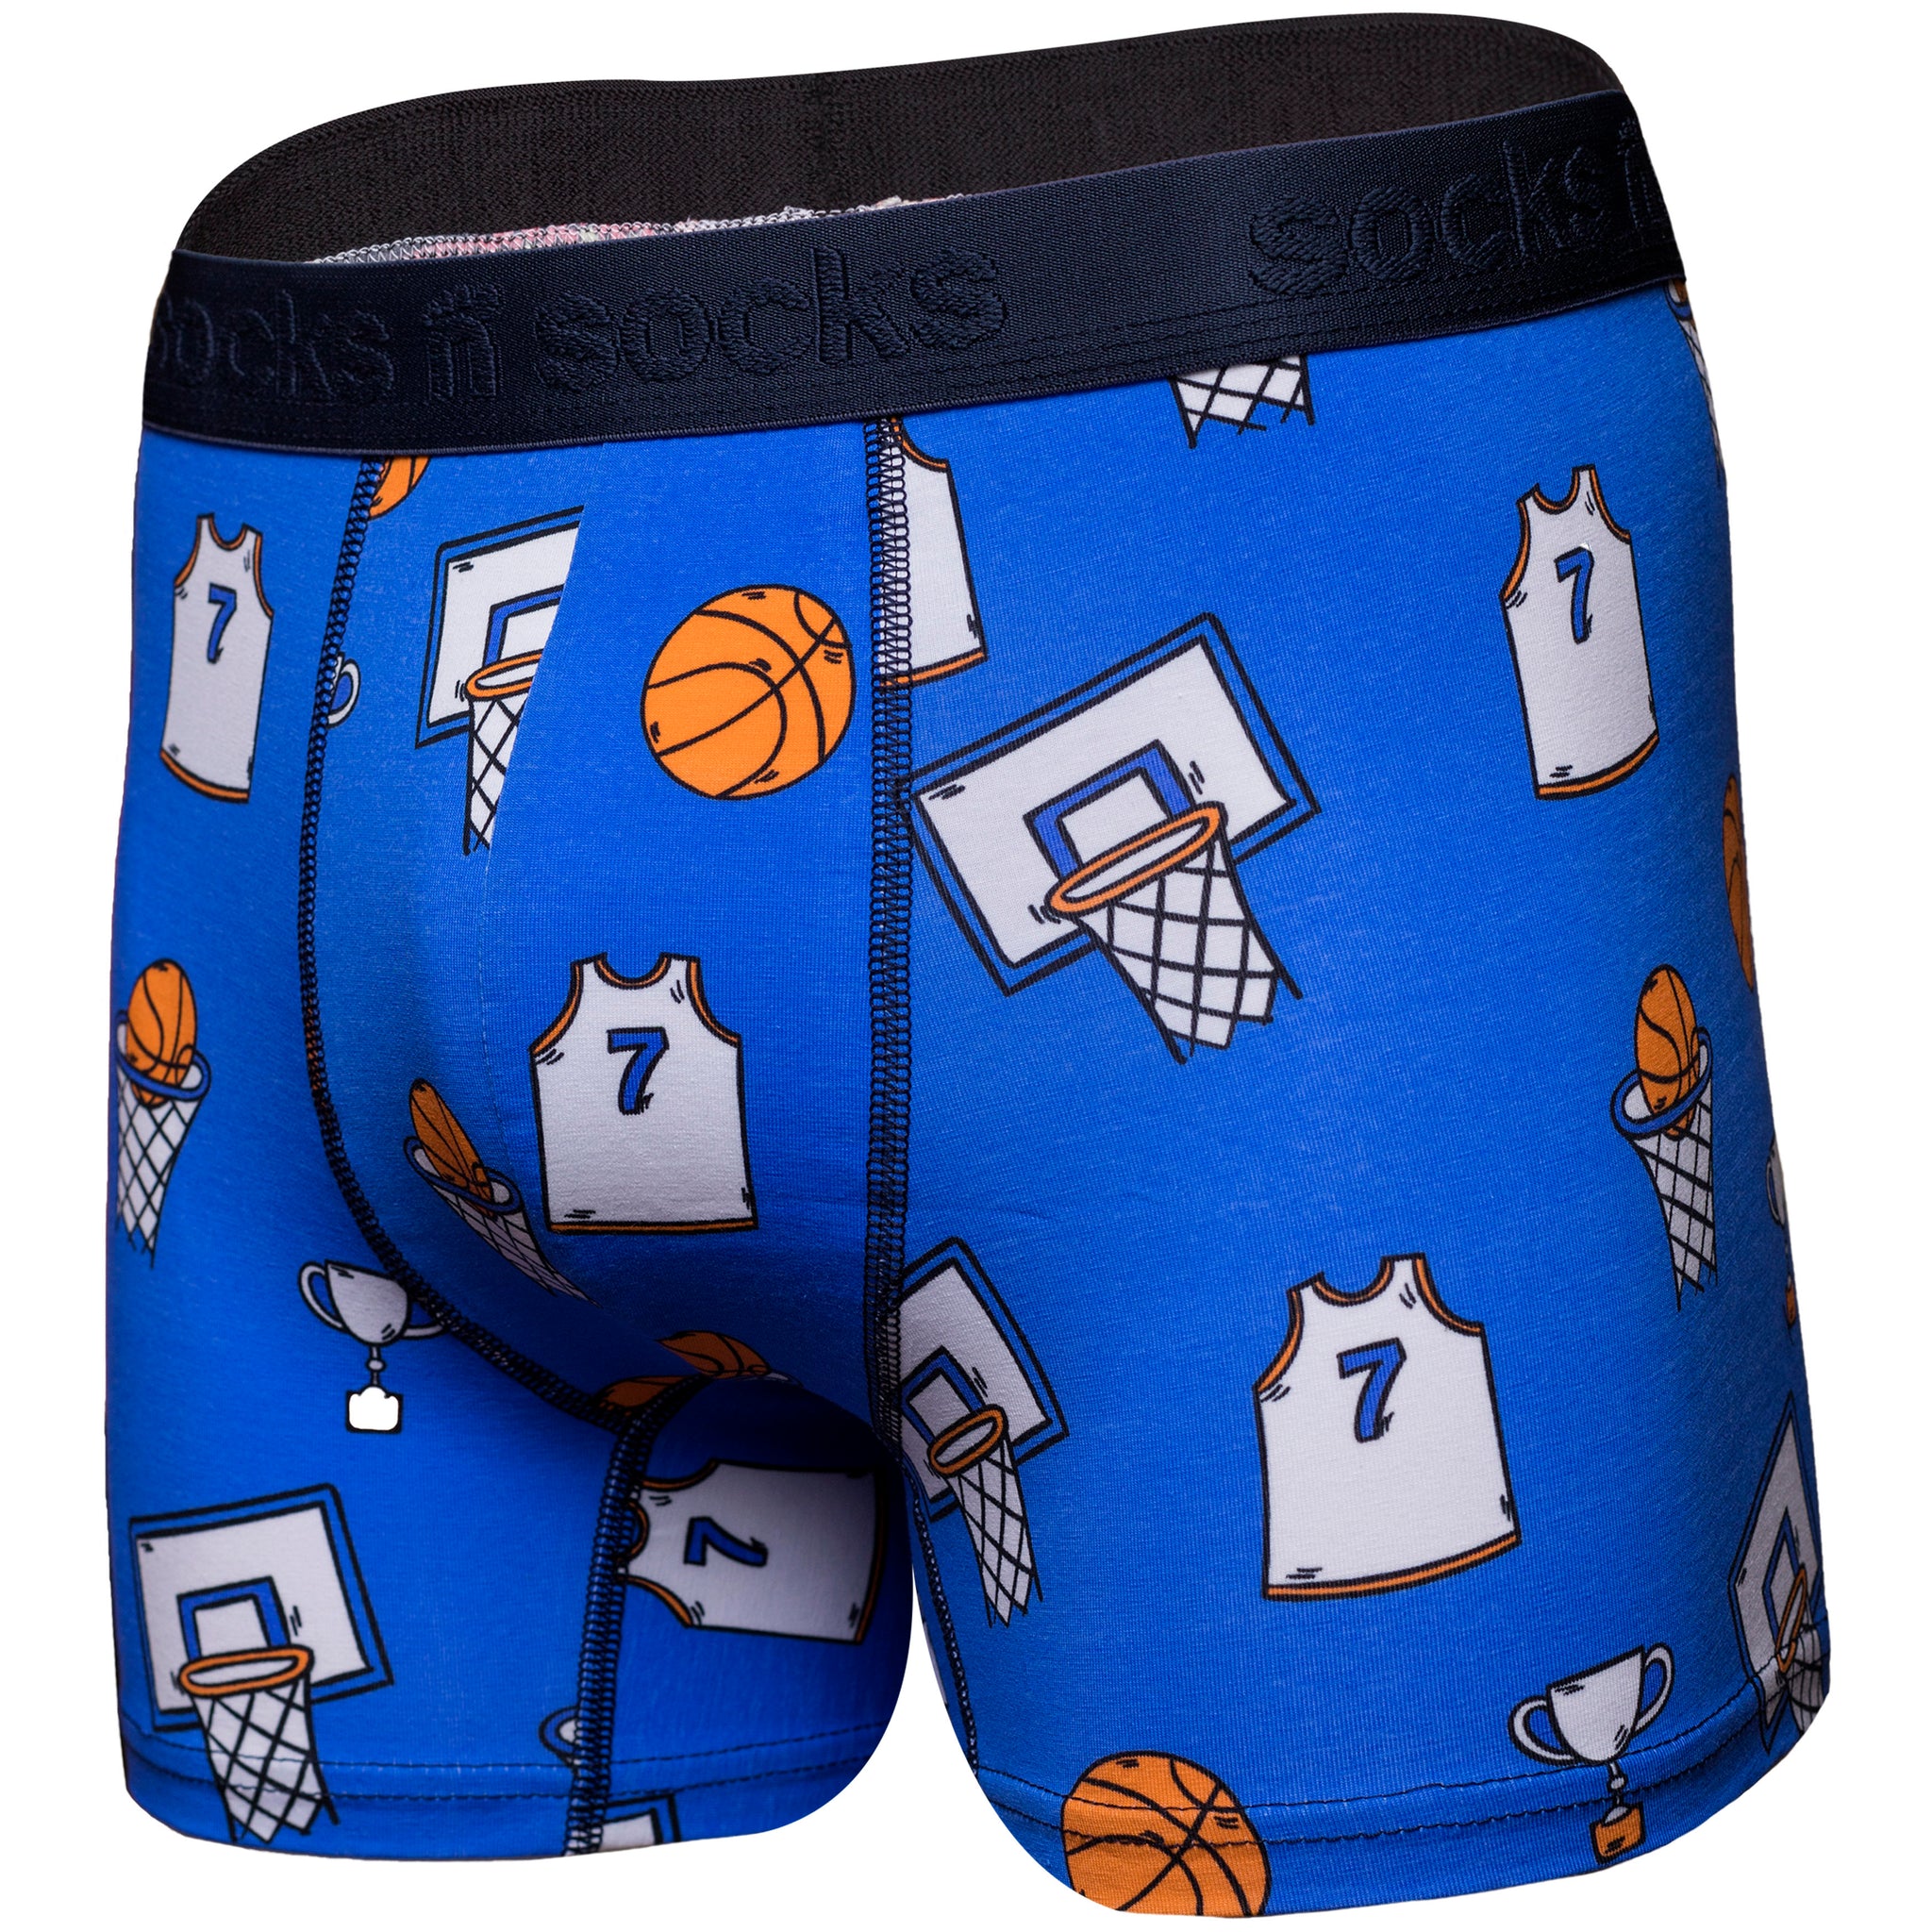 Men's Basketball Boxer Brief - Socks n Socks